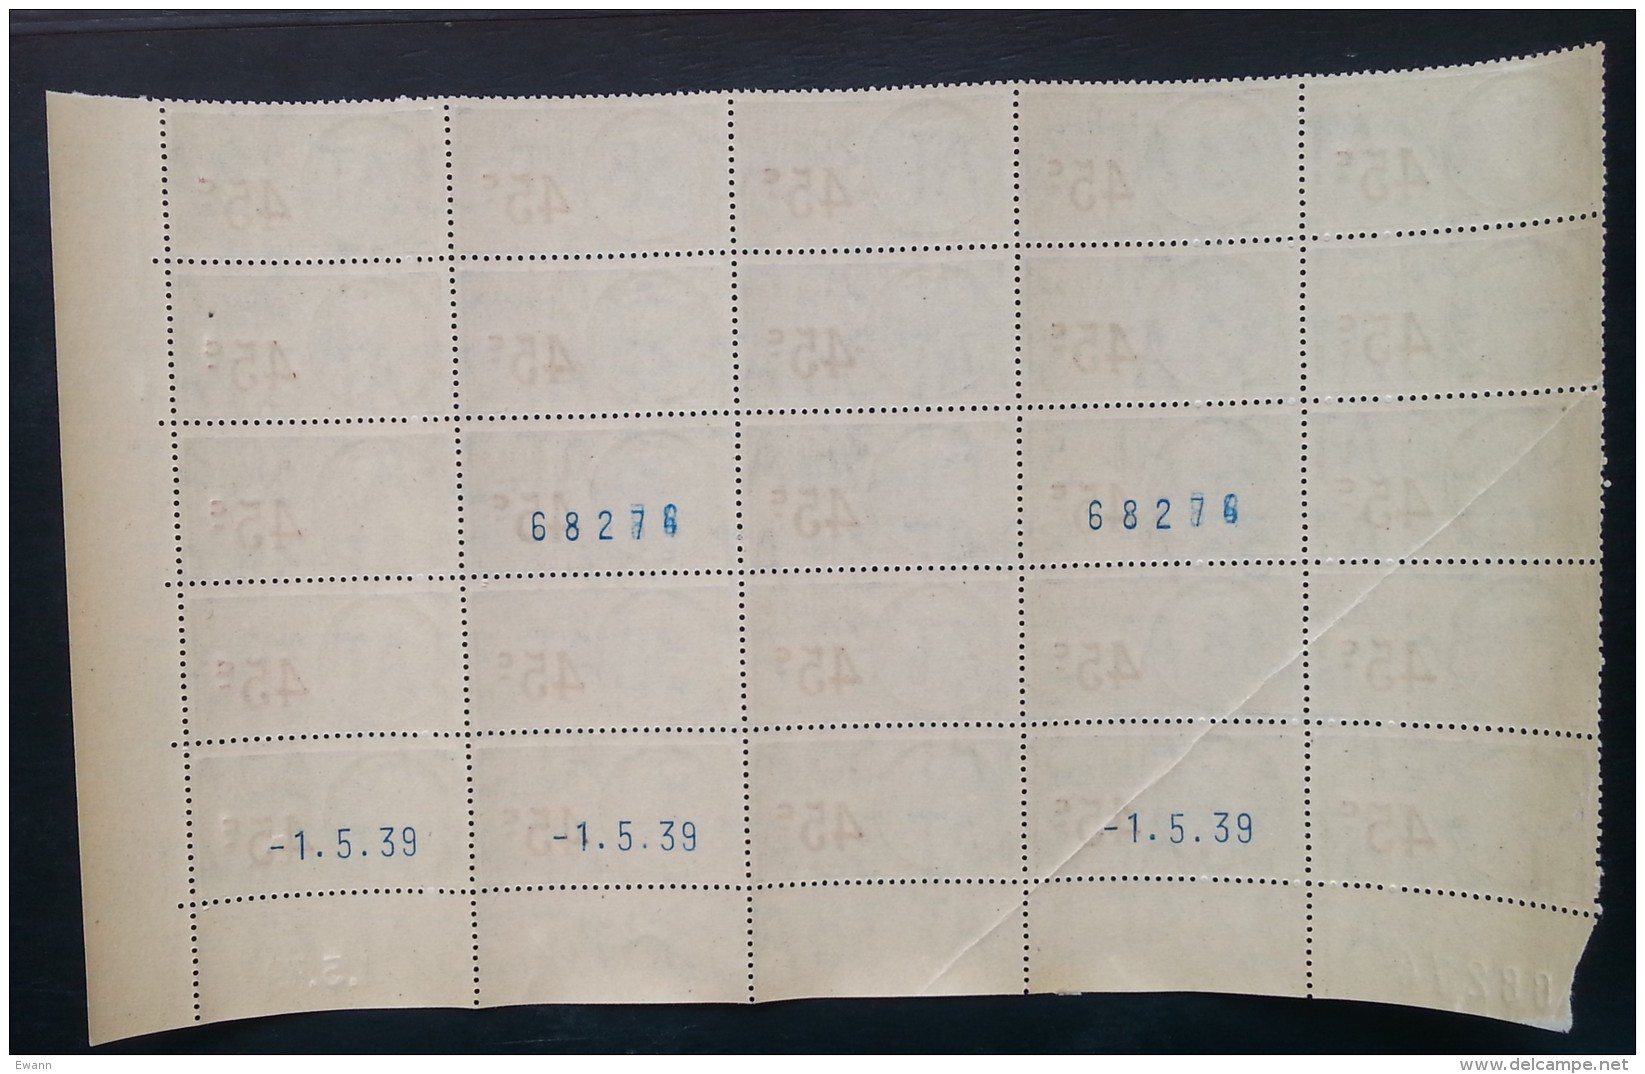 Planche 25 Timbres Fiscaux - 45c - Coin Daté 1.5.1939 - Neufs - Stamps